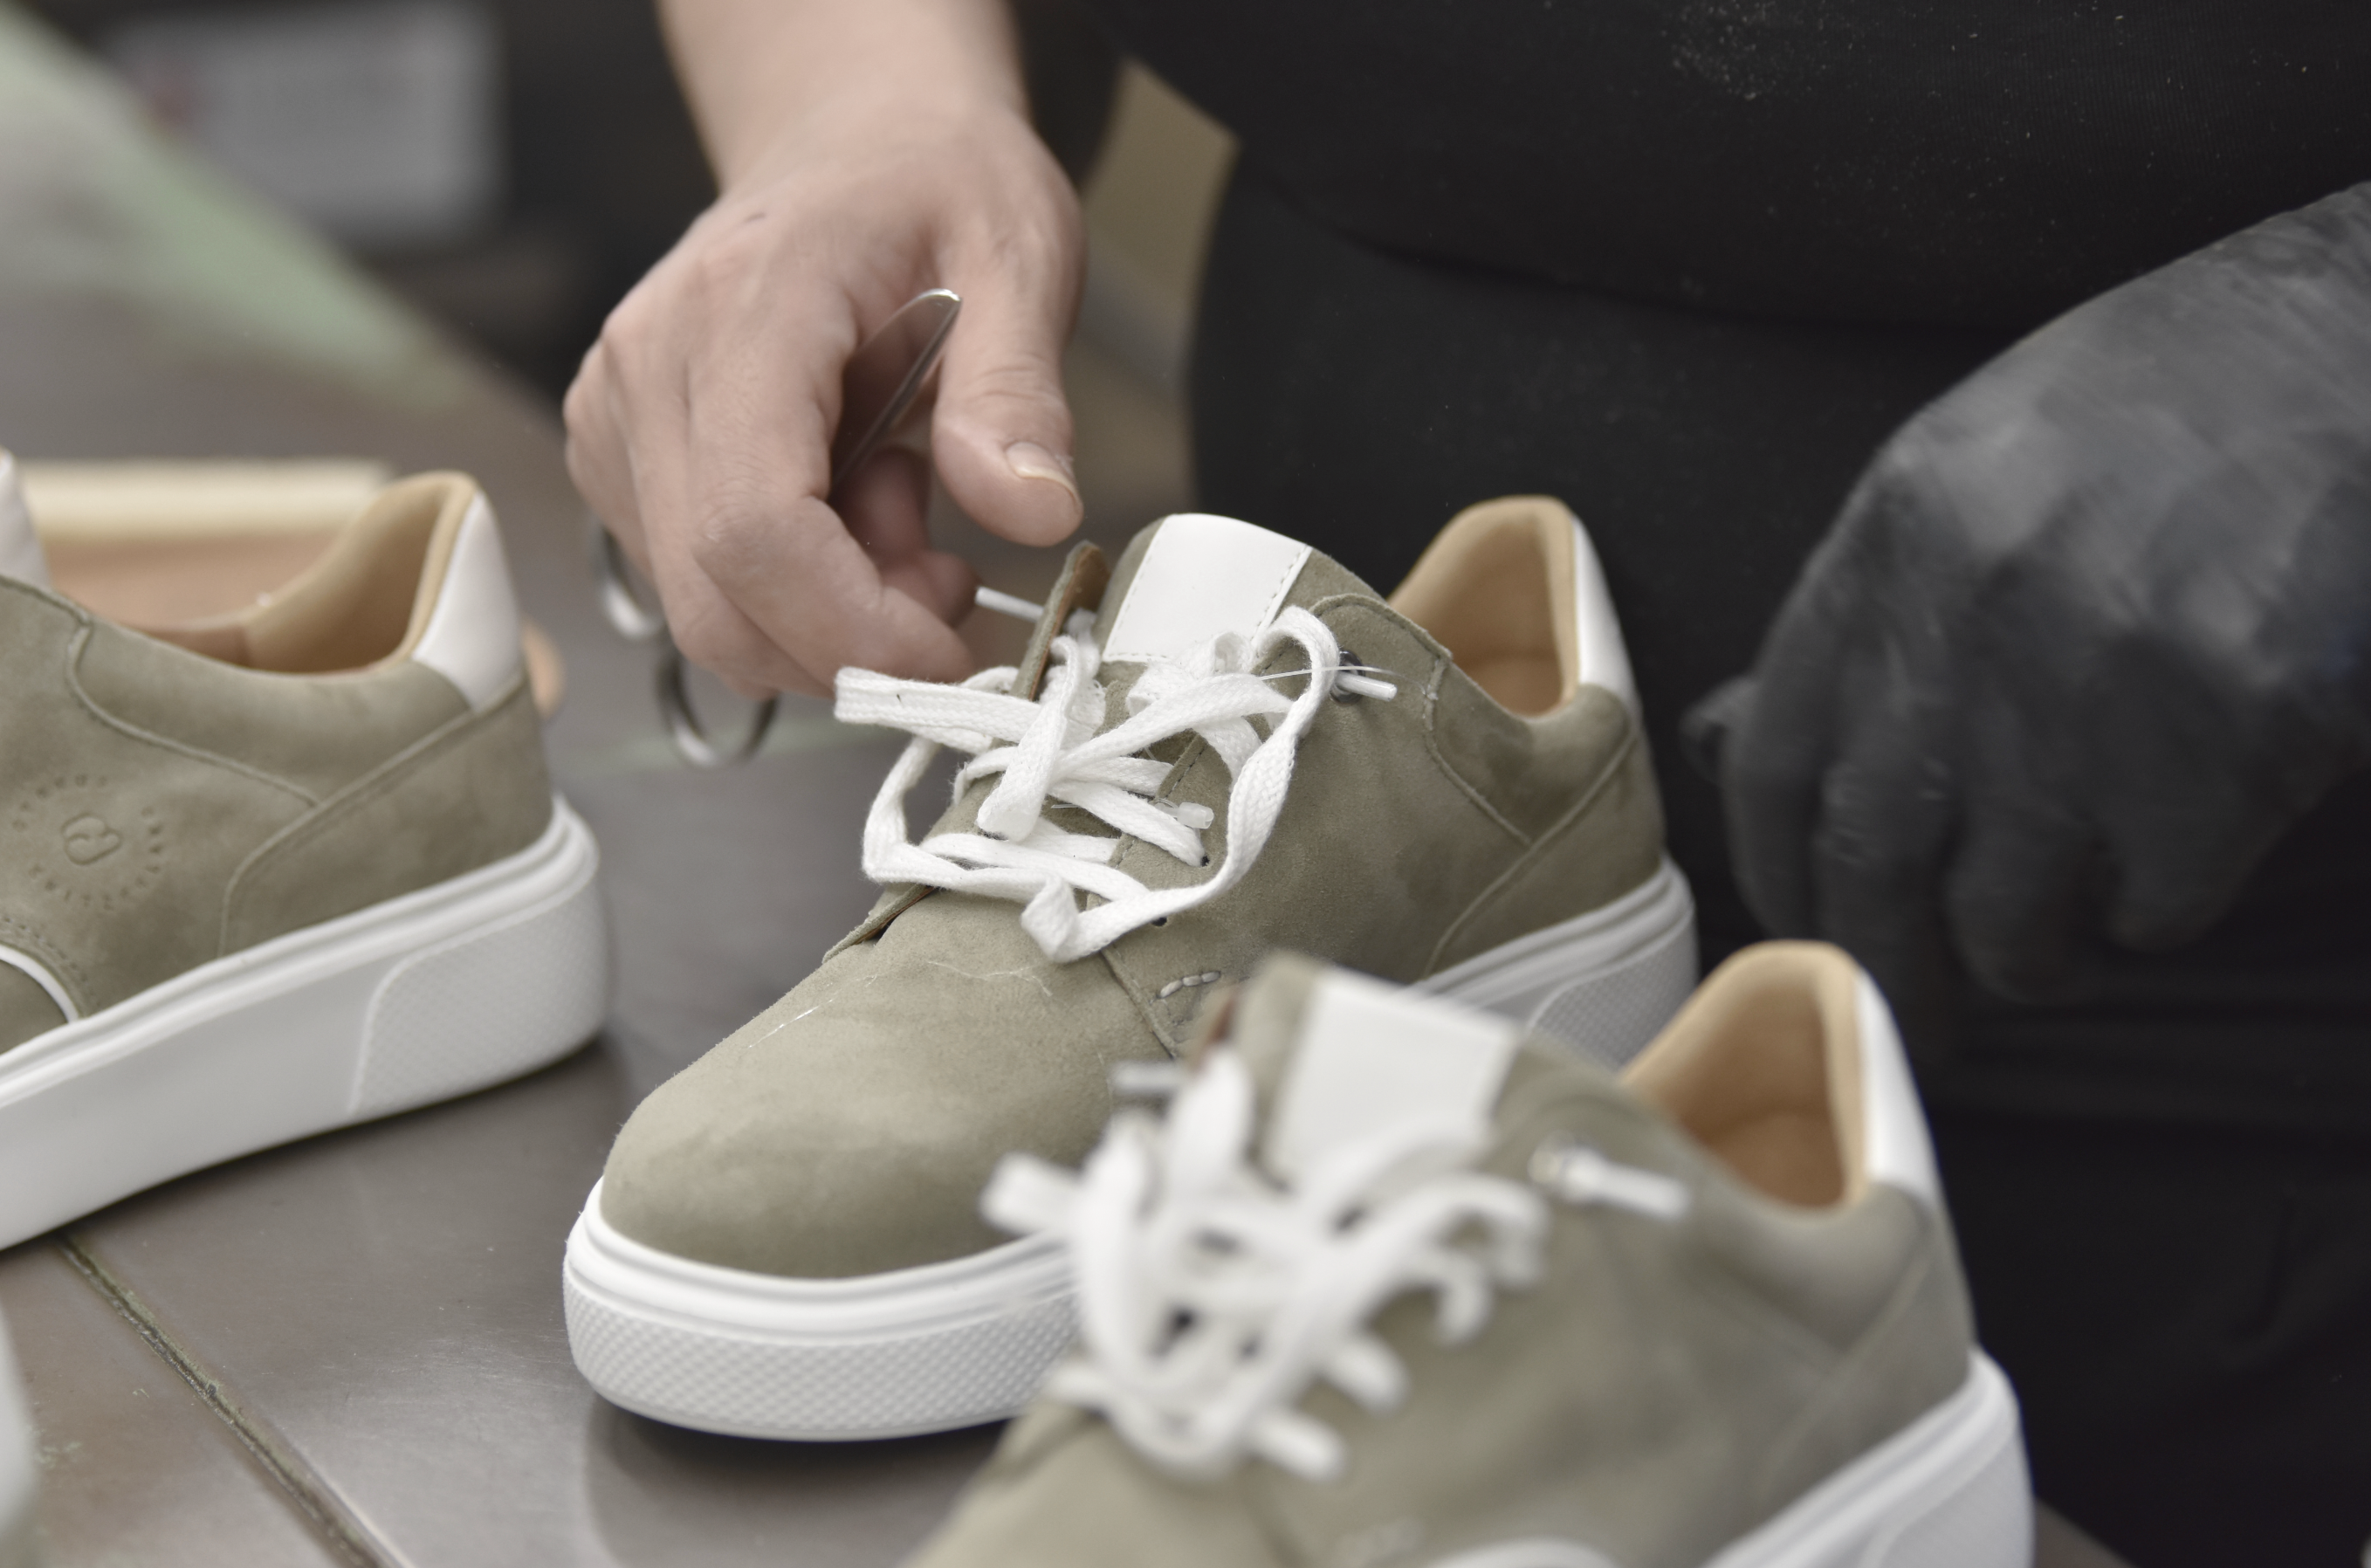 CYBRUS Sneaker ist im Finish der Produktion, in der Endkontrolle werden die Bändel gebunden.